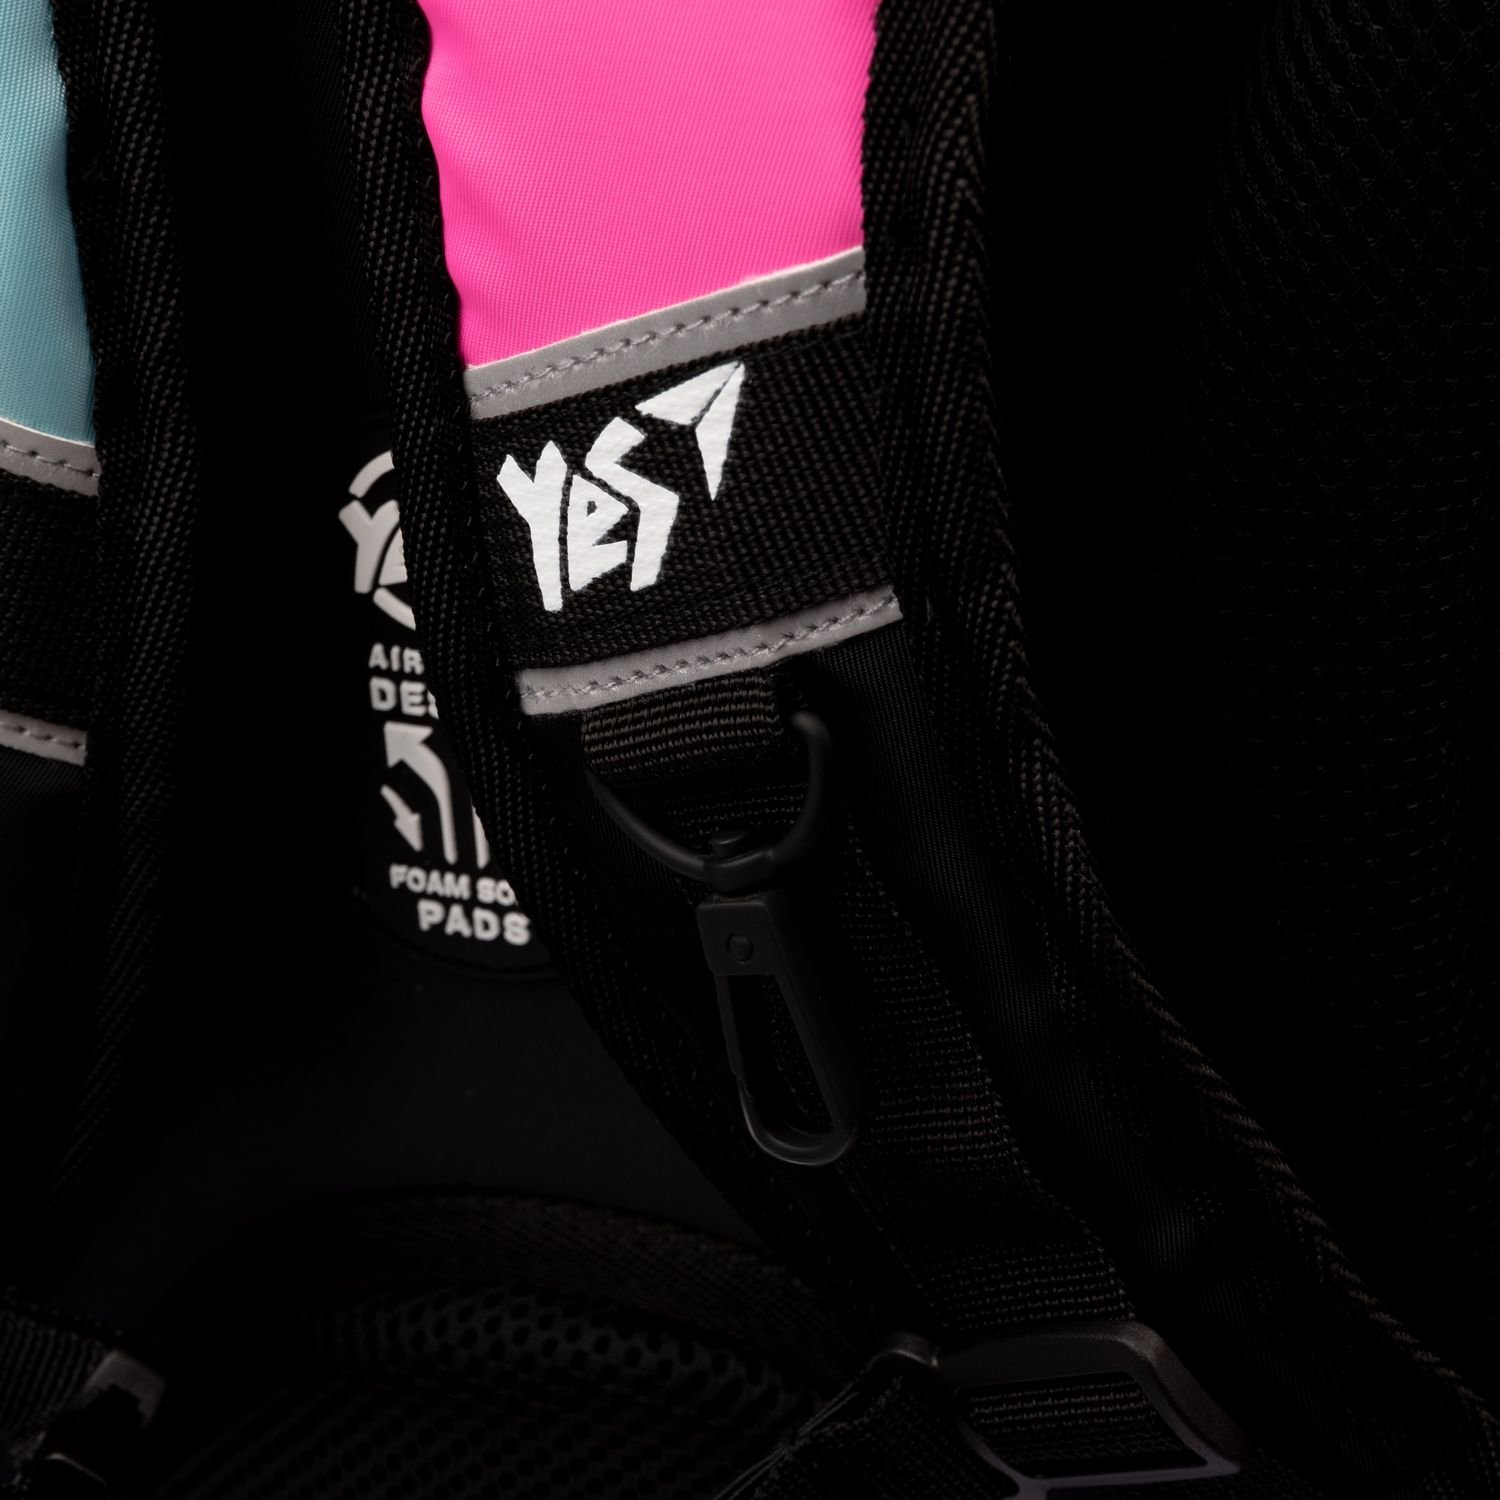 Рюкзак Yes TS-93 Andre Tan Space Pink, черный с розовым (559036) - фото 14